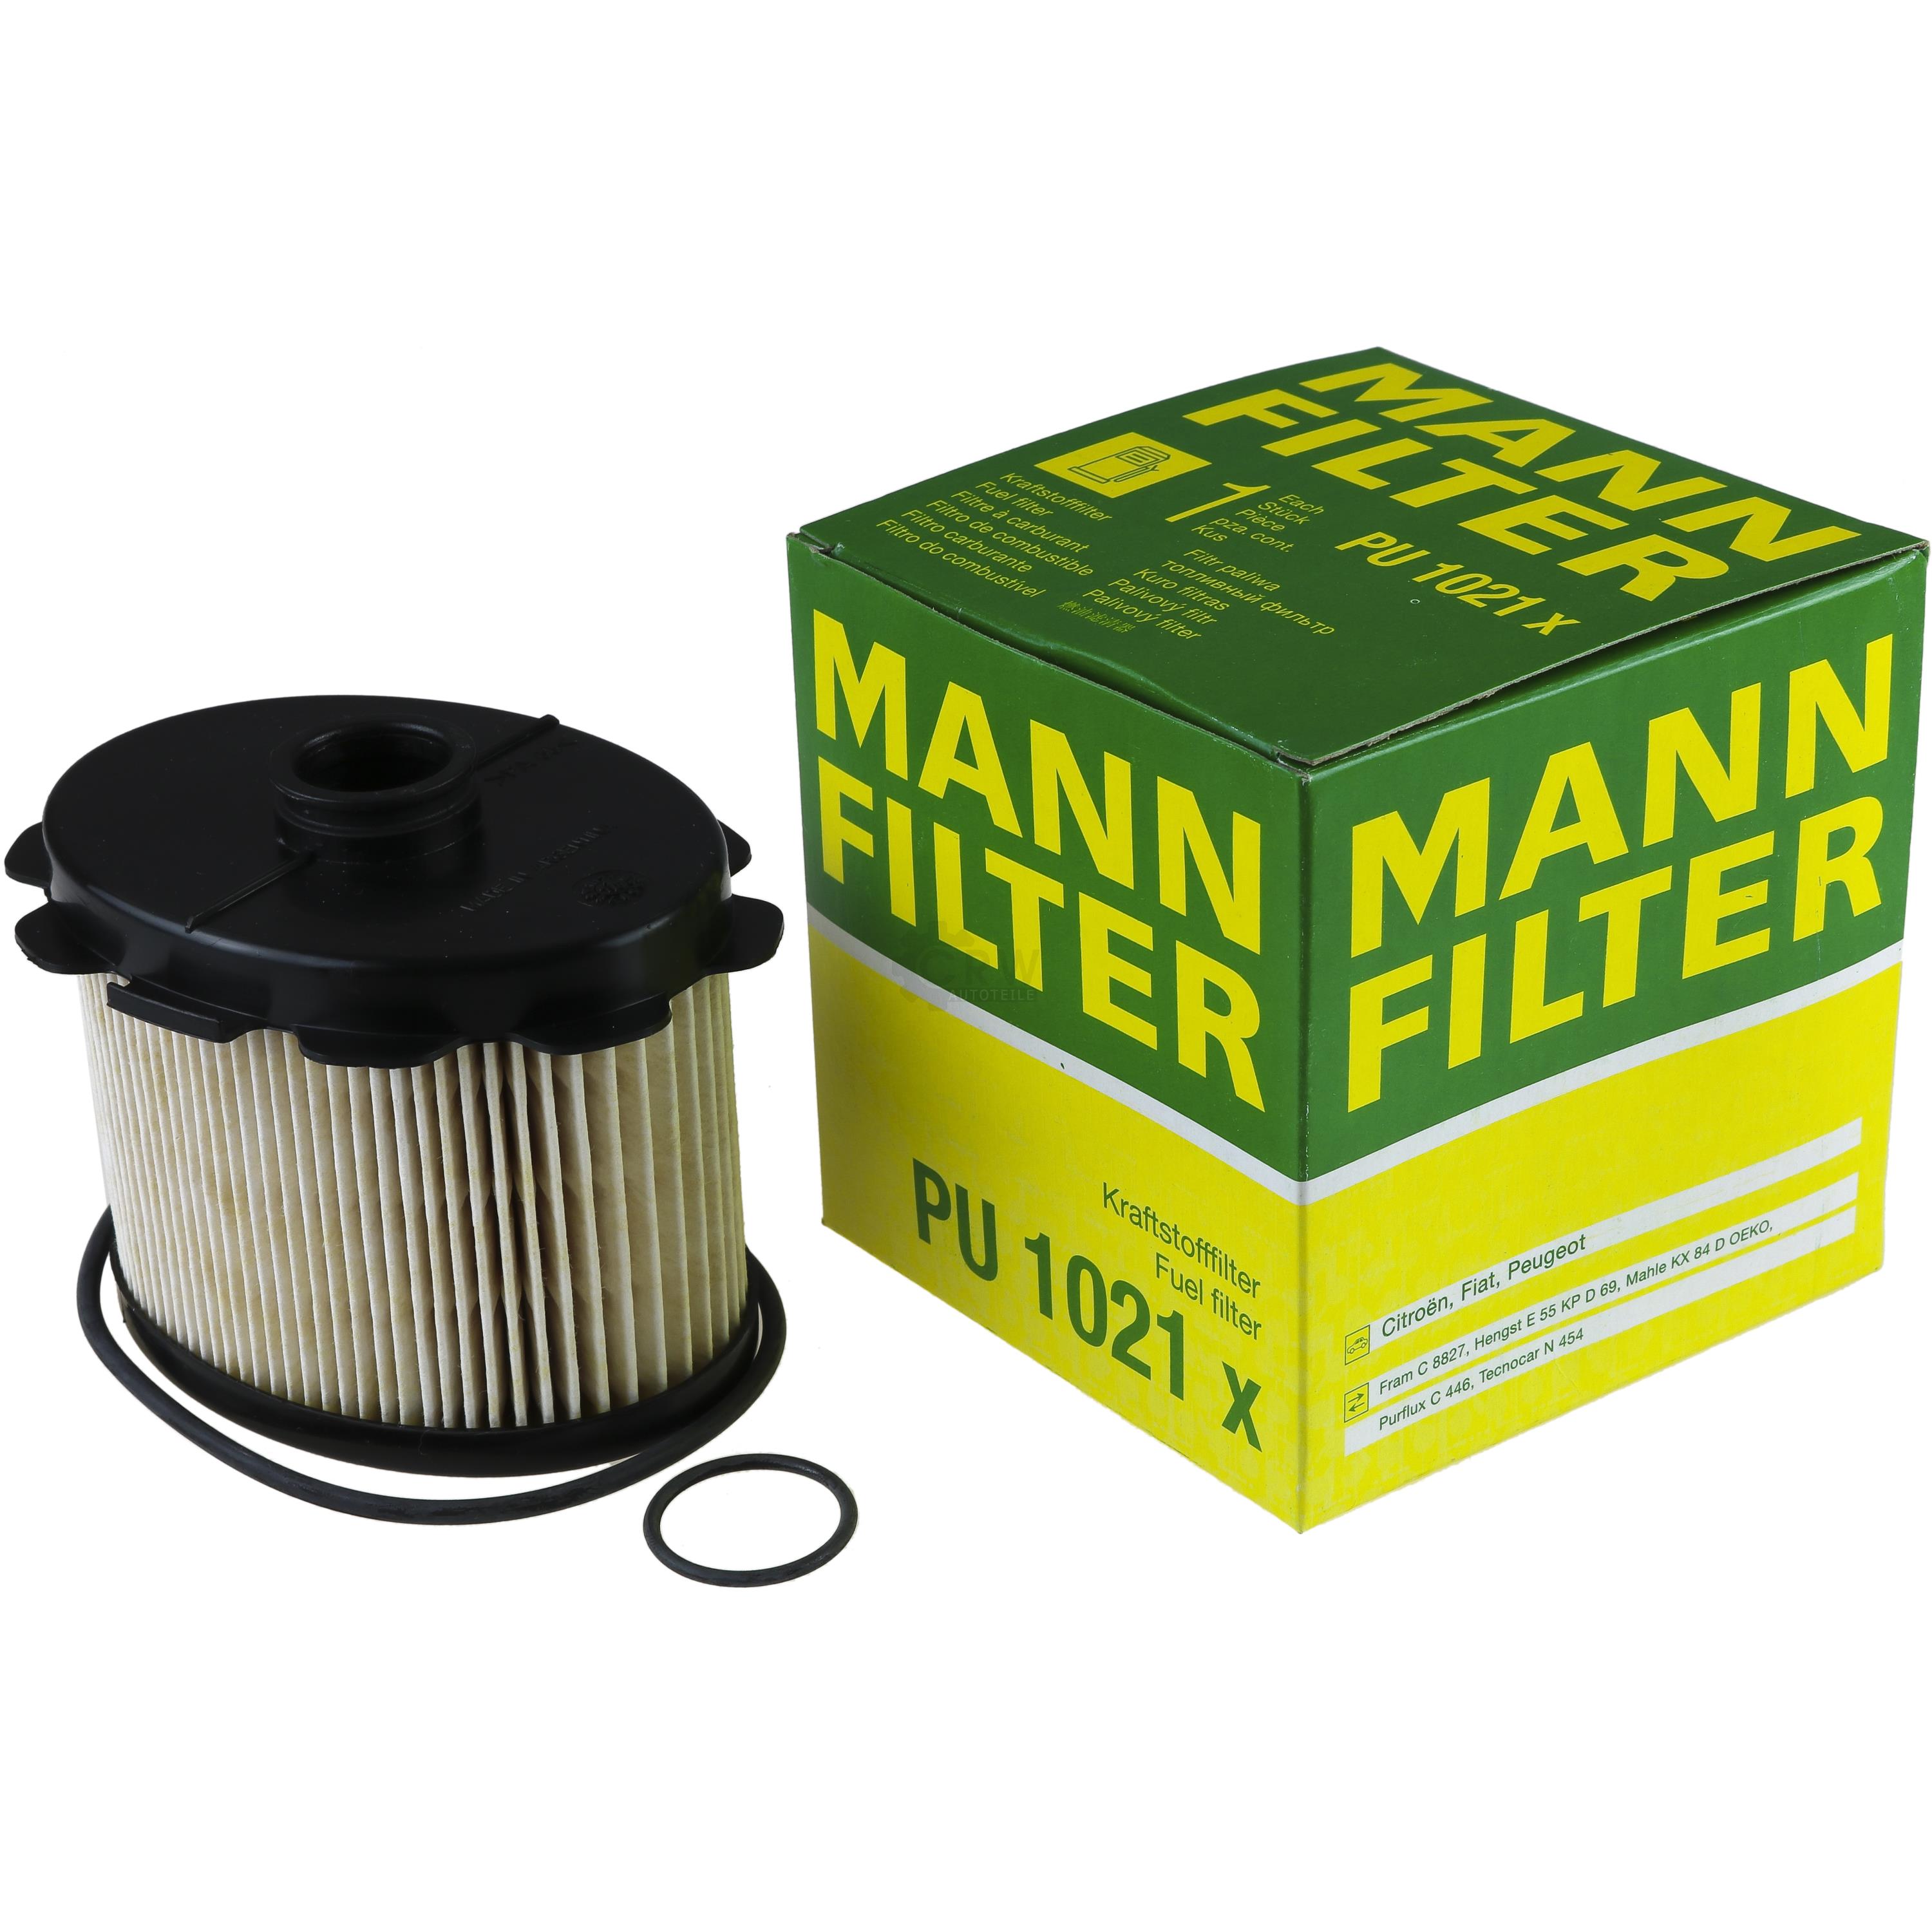 MANN-FILTER Kraftstofffilter PU 1021 x Fuel Filter